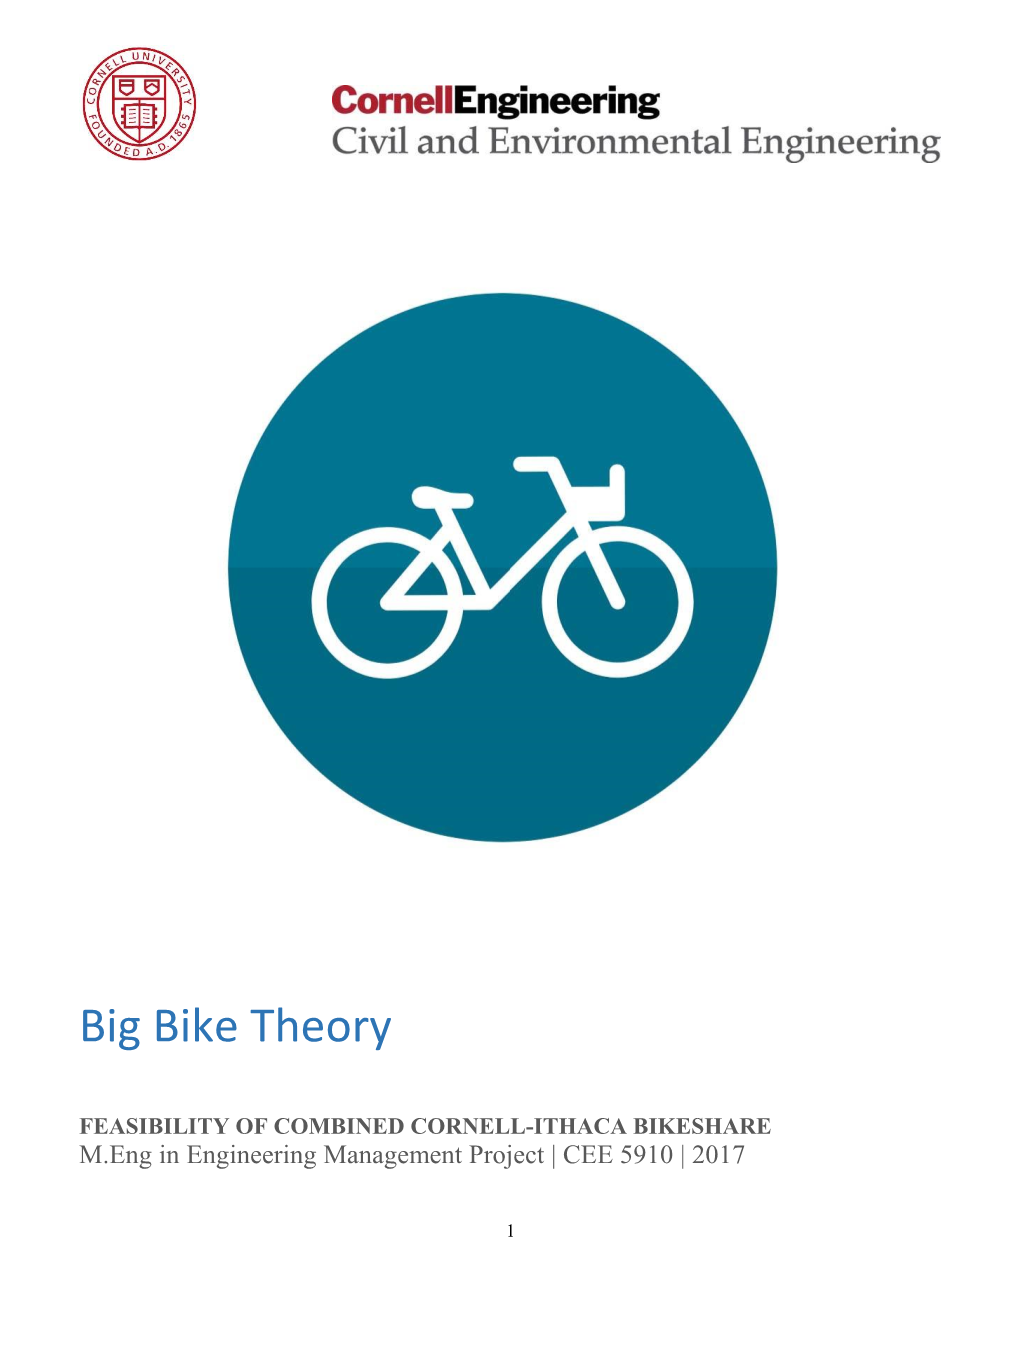 Big Bike Theory